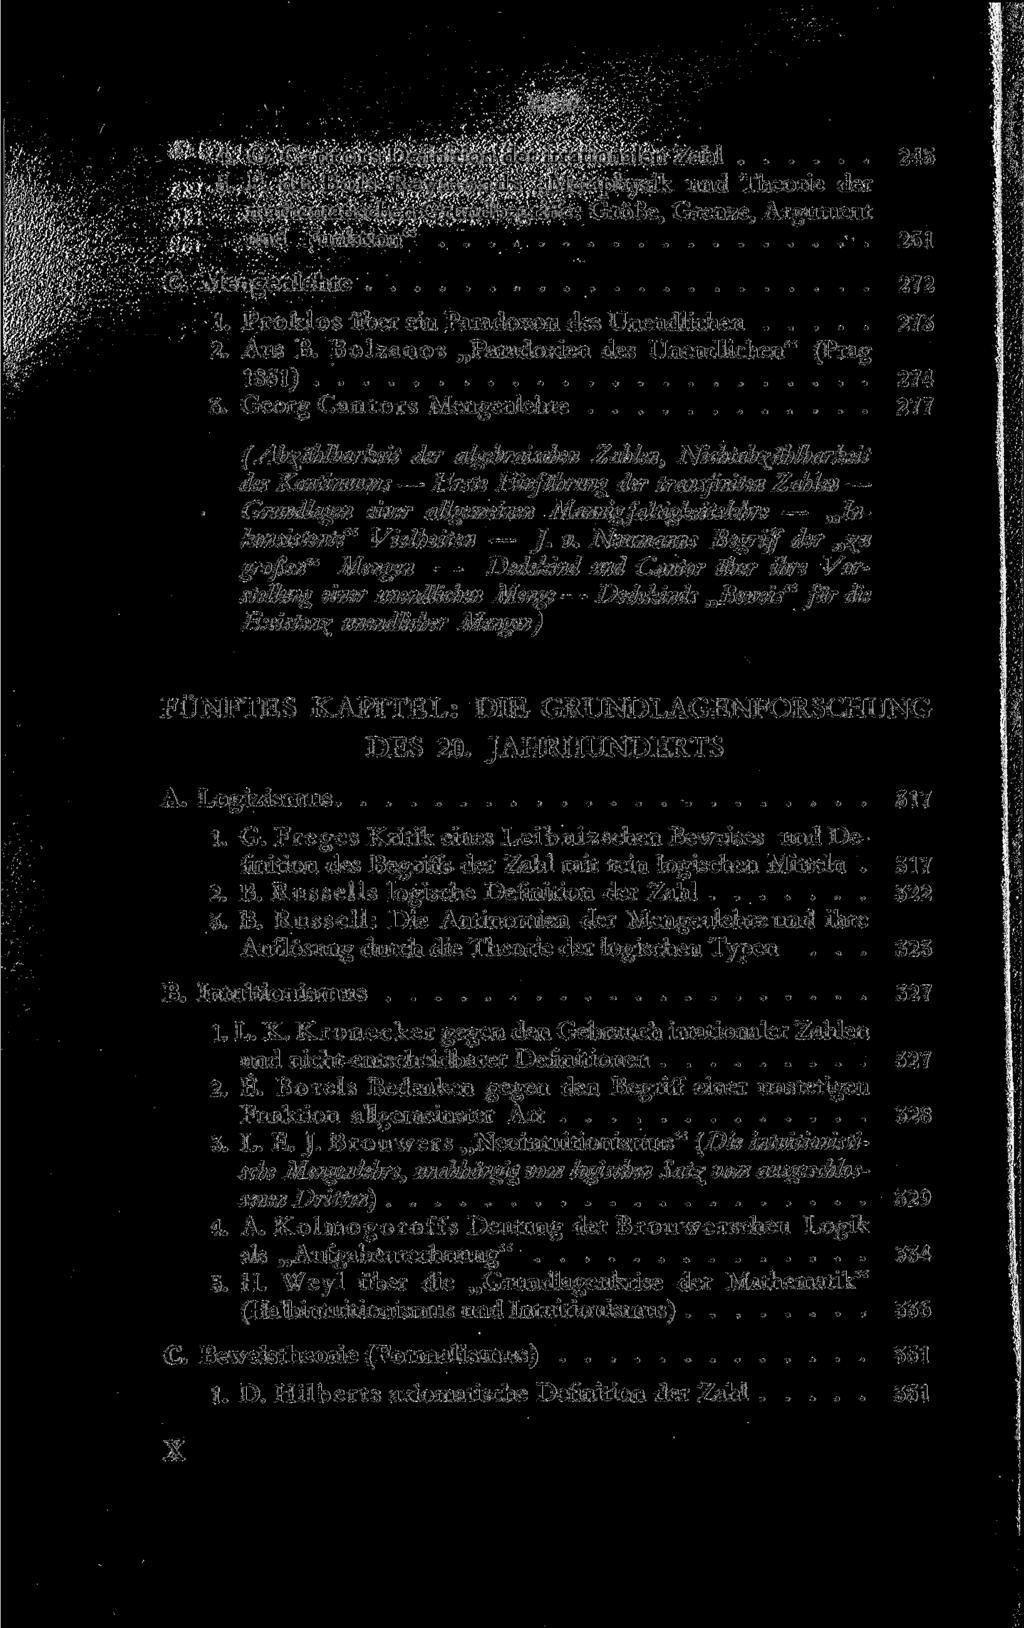 labalt 4. G. Cantors Definition der irrationalen Zahl 245 5. P. du Bois-Reymonds Metaphysik und Theorie der mathematischen Grundbegriffe: Größe, Grenze, Argument und Funktion" 251 C.